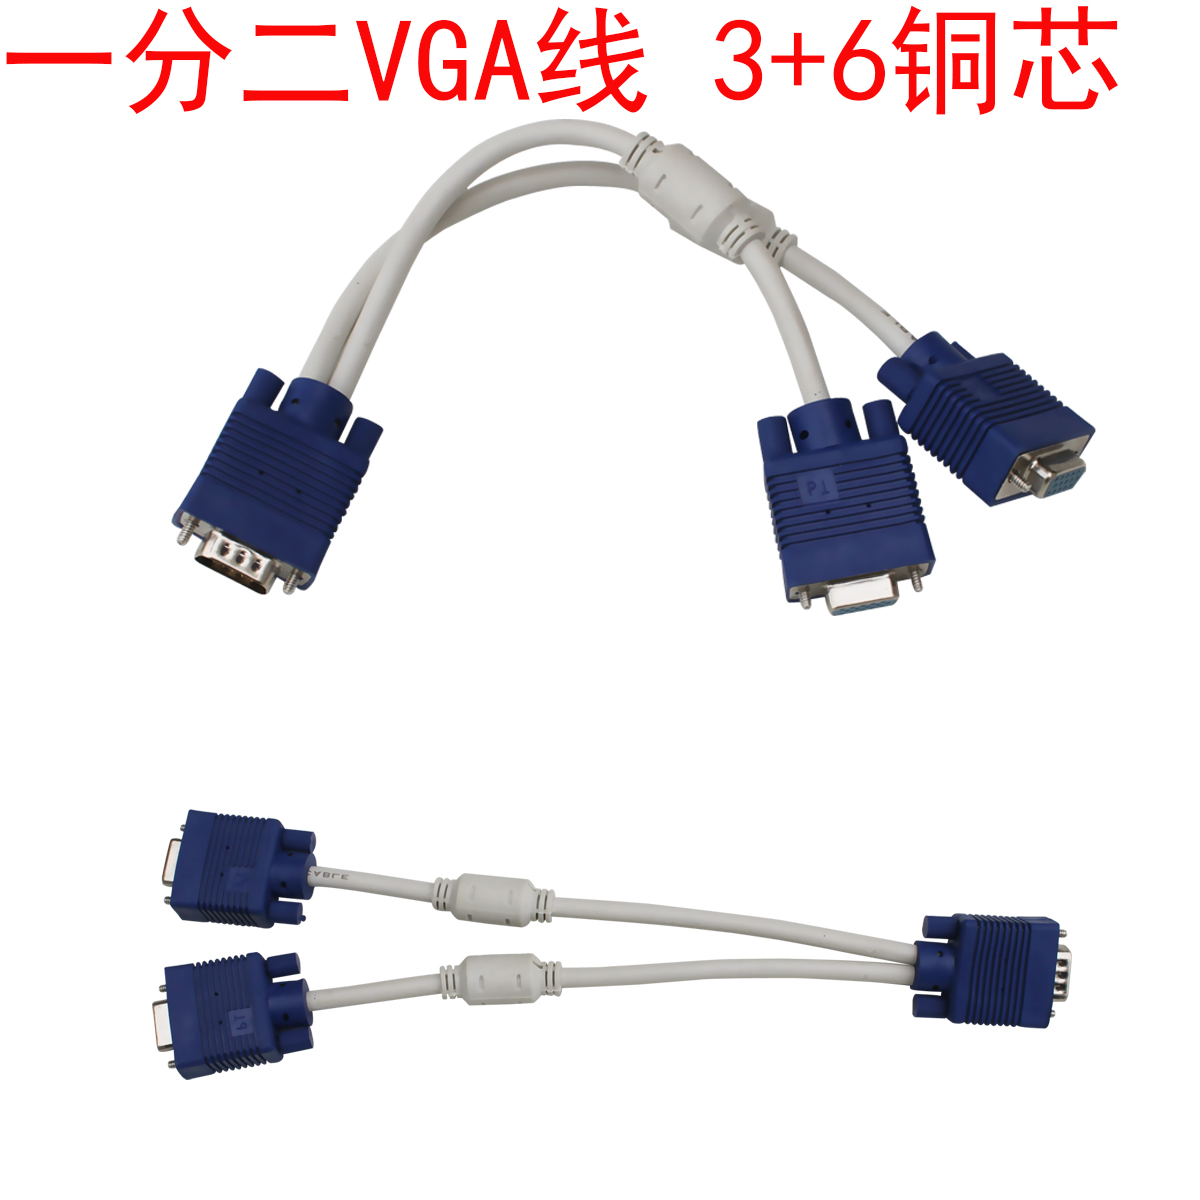 包邮 一分二VGA数据线 一转二屏幕传输高清线 3+6双磁头画面线折扣优惠信息